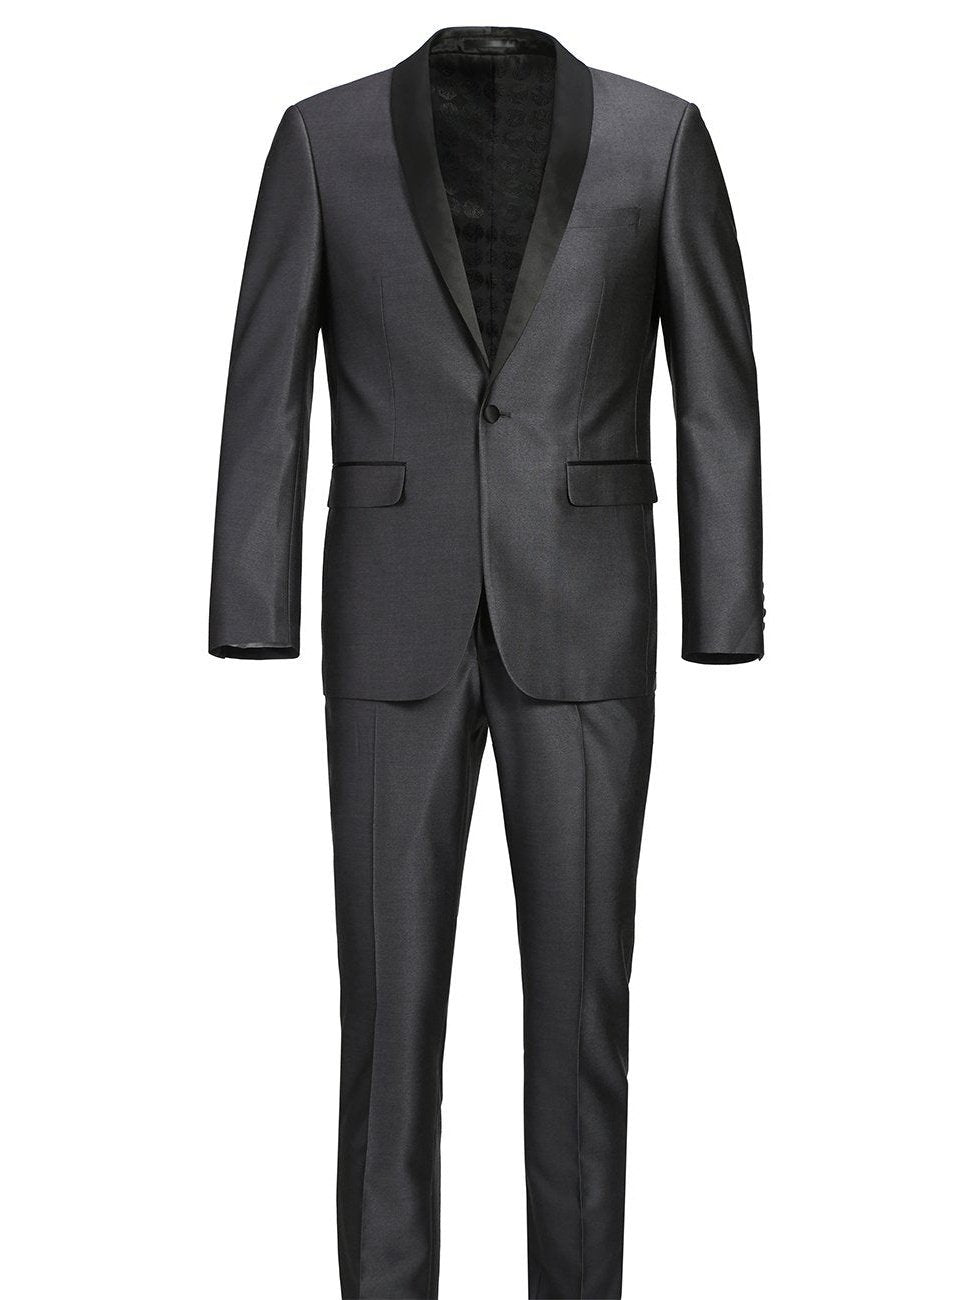 Men's Slim Fit 2-Piece Shawl Lapel Tuxedo Suit